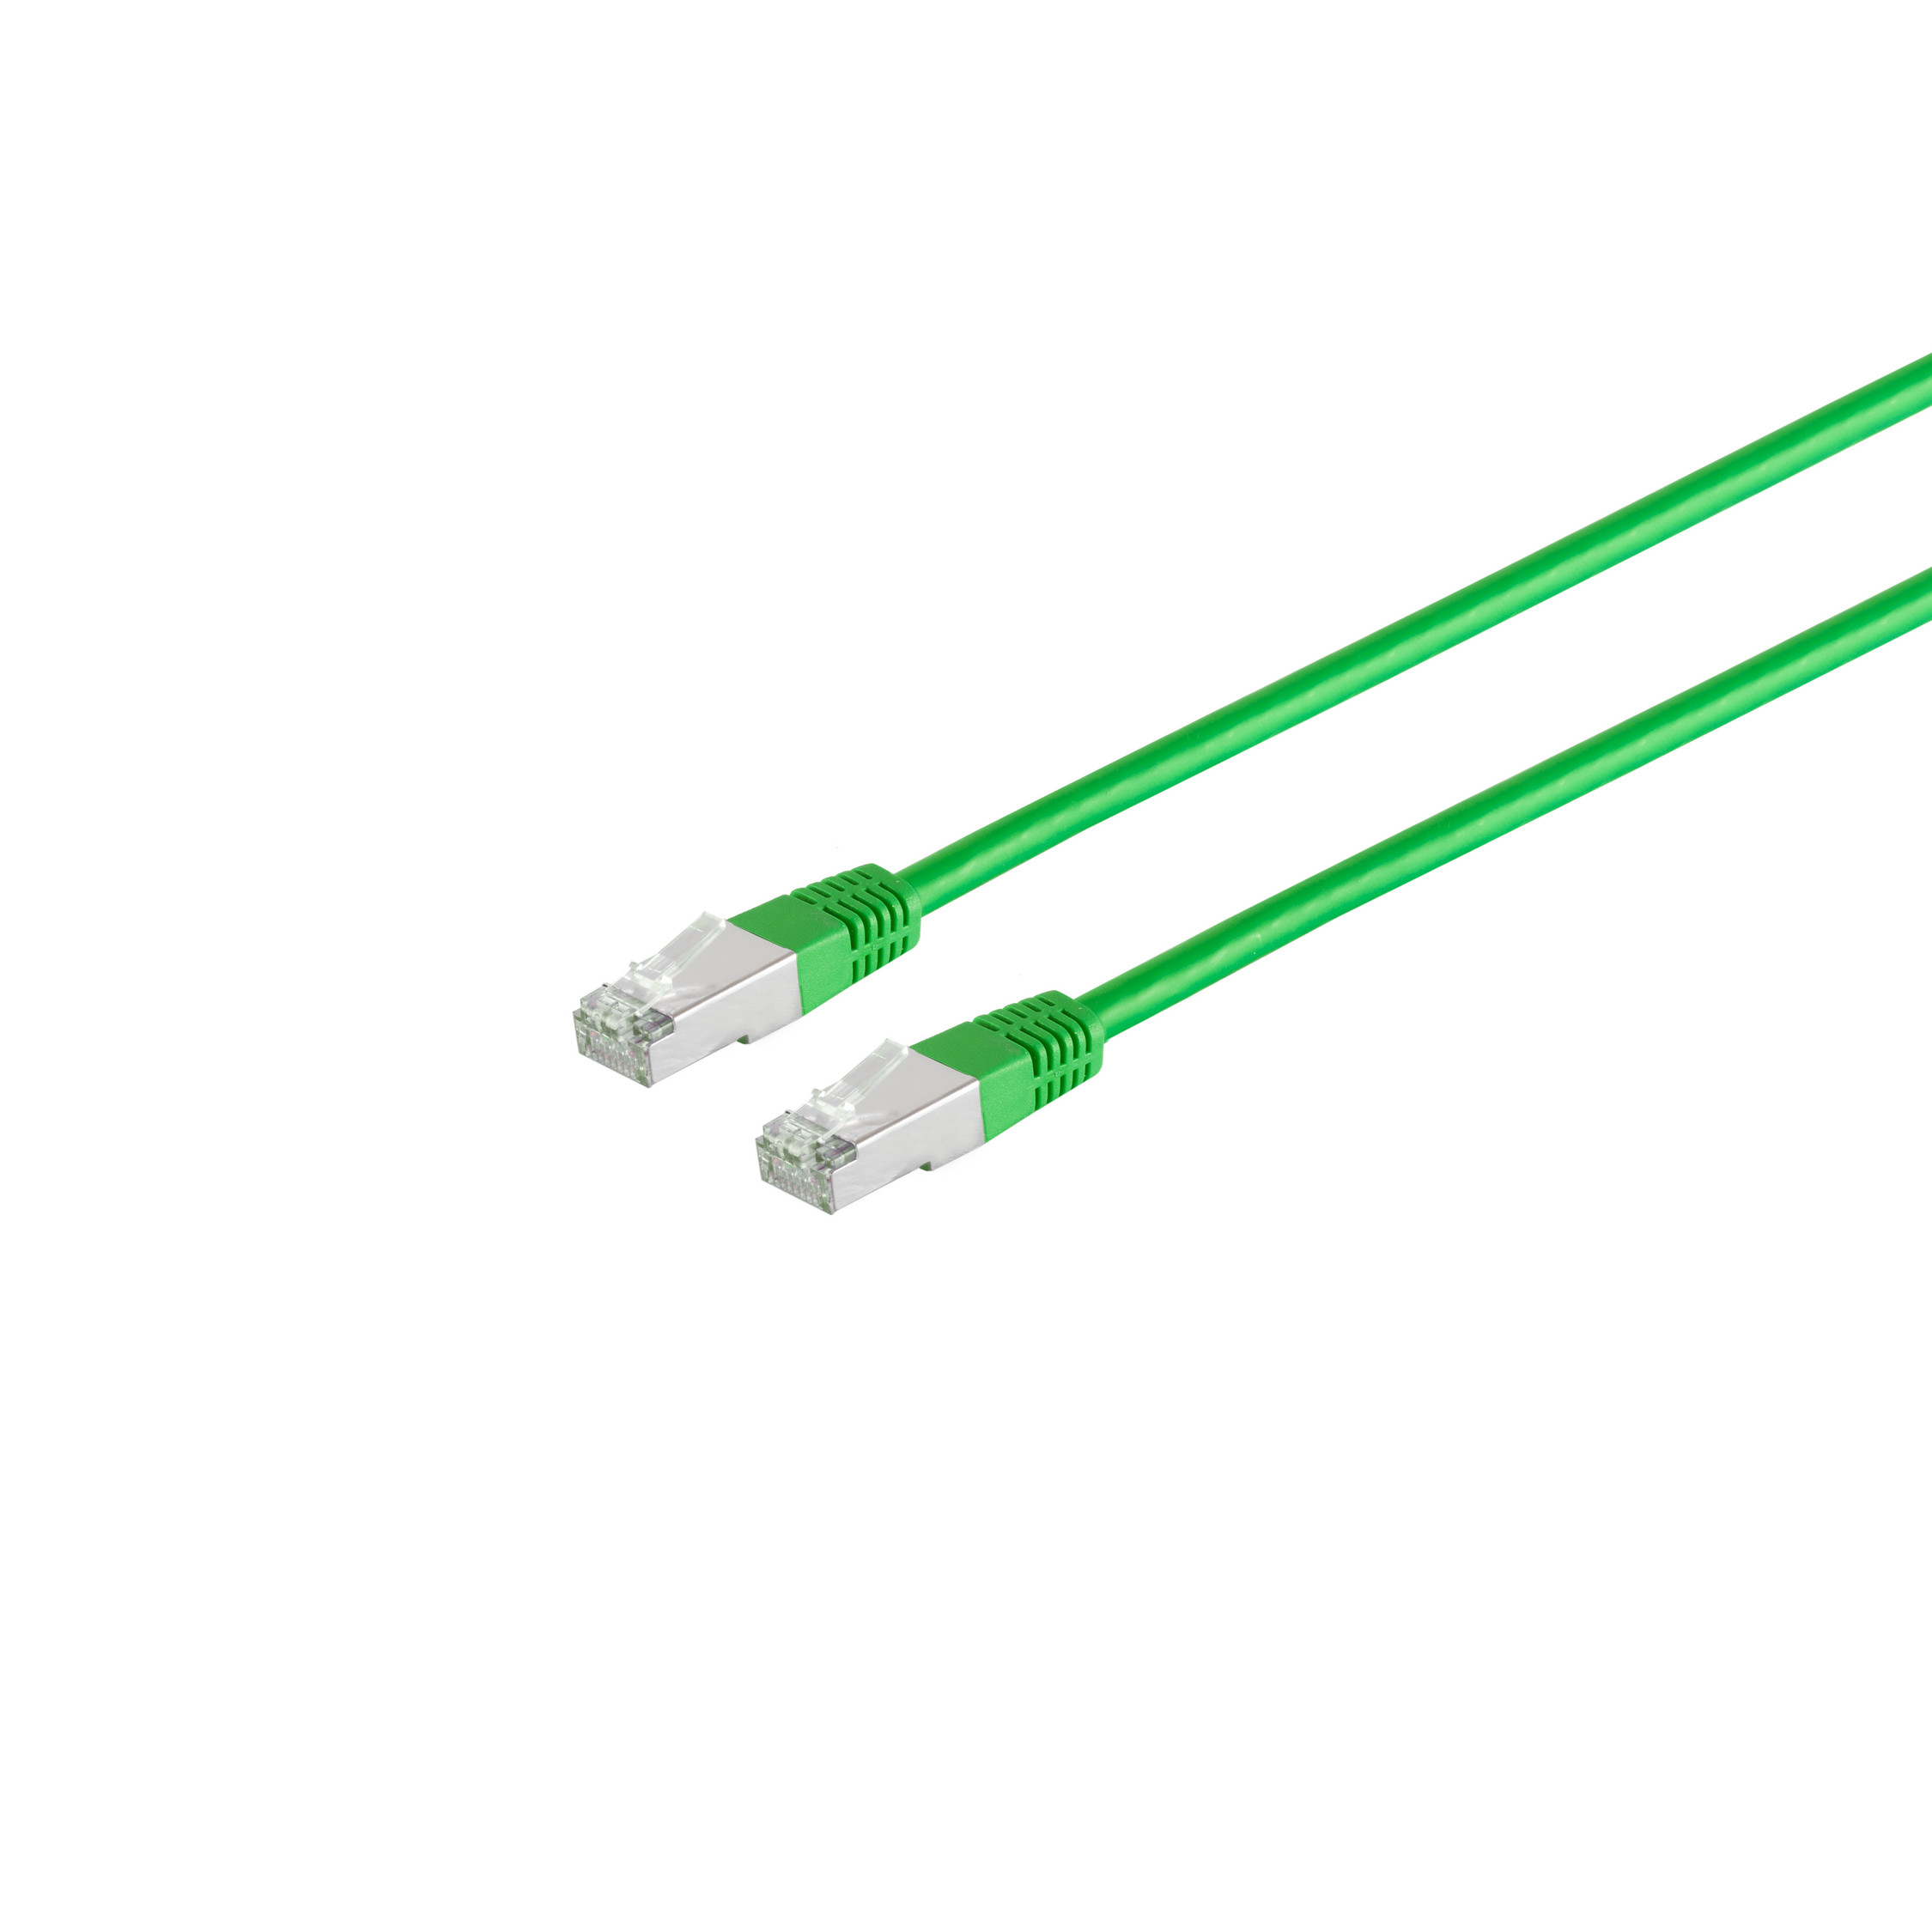 S/CONN MAXIMUM Halogenfrei 6 15m, grün cat Patchkabel m 15 PIMF CONNECTIVITY S/FTP RJ45, Patchkabel